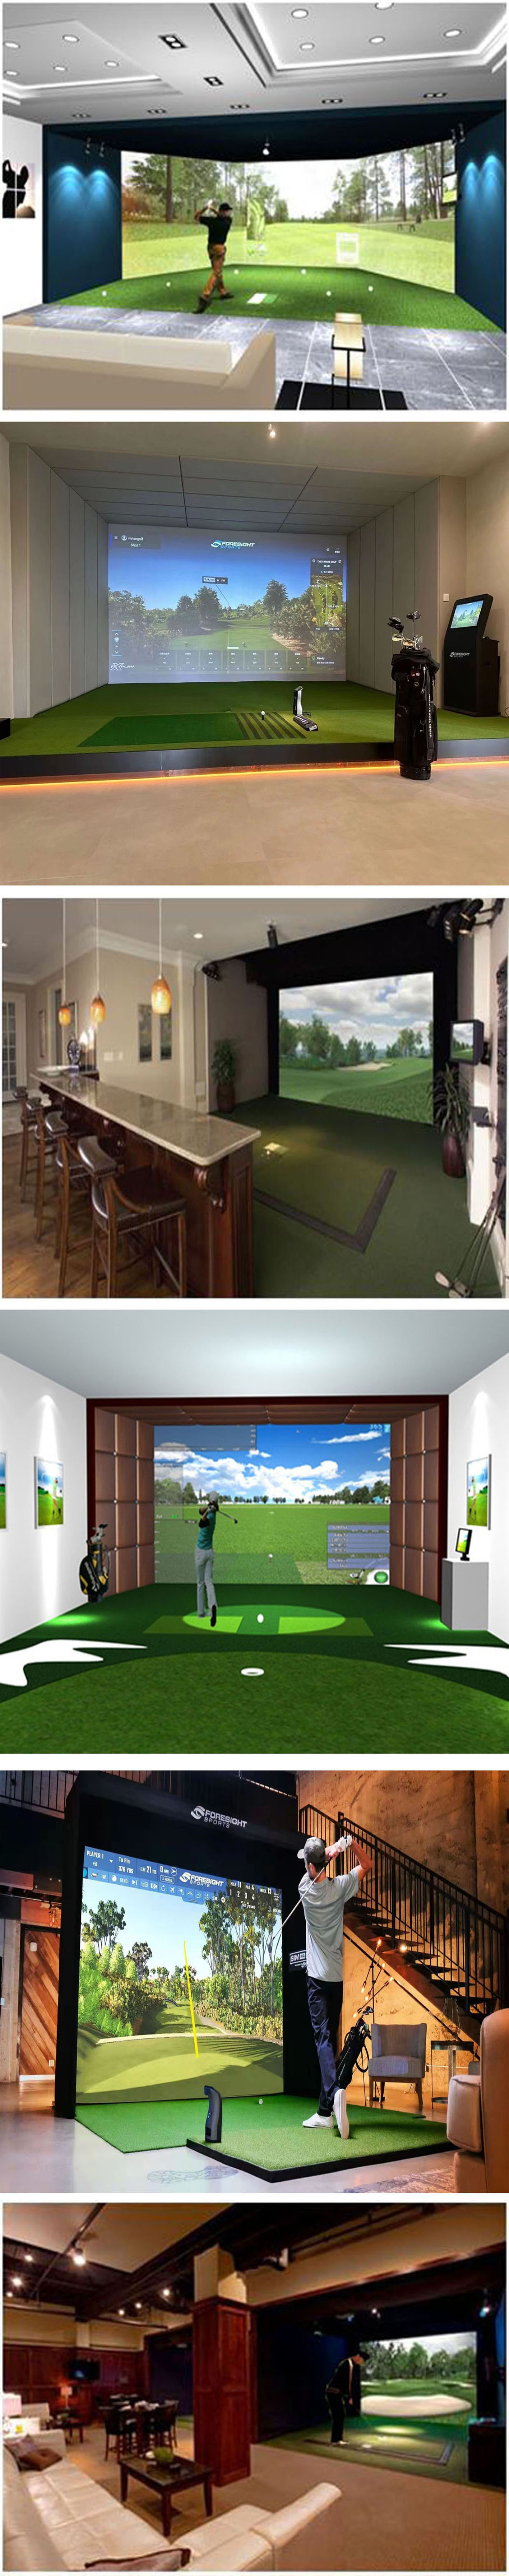 室内高尔夫模拟球场 2.jpg